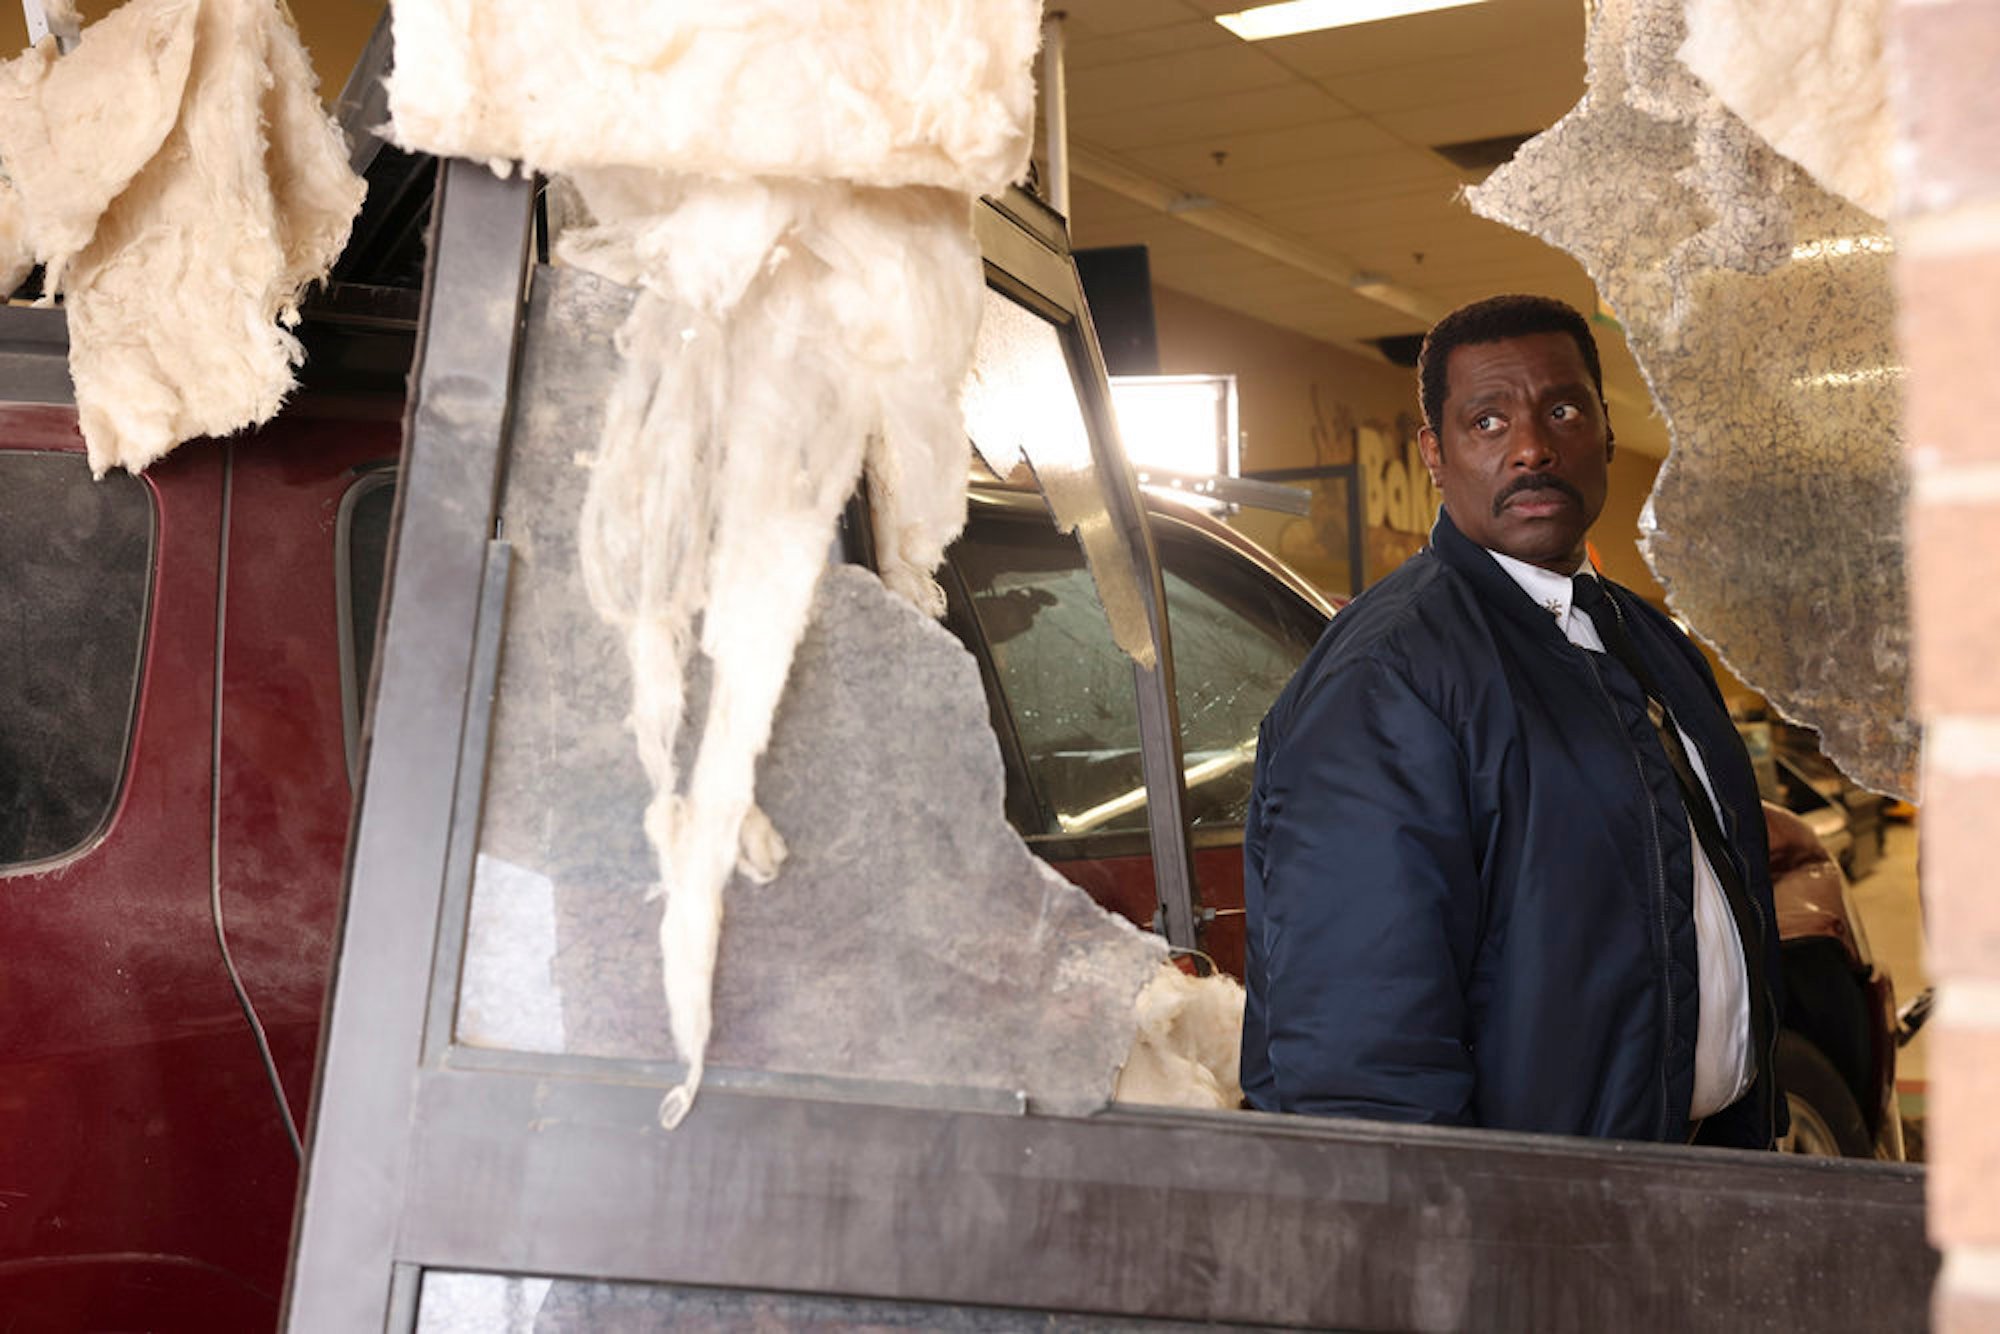 'Chicago Fire' Season 10 Episode 18 still of Eamonn Walker as Wallace Boden looking out of a broken window